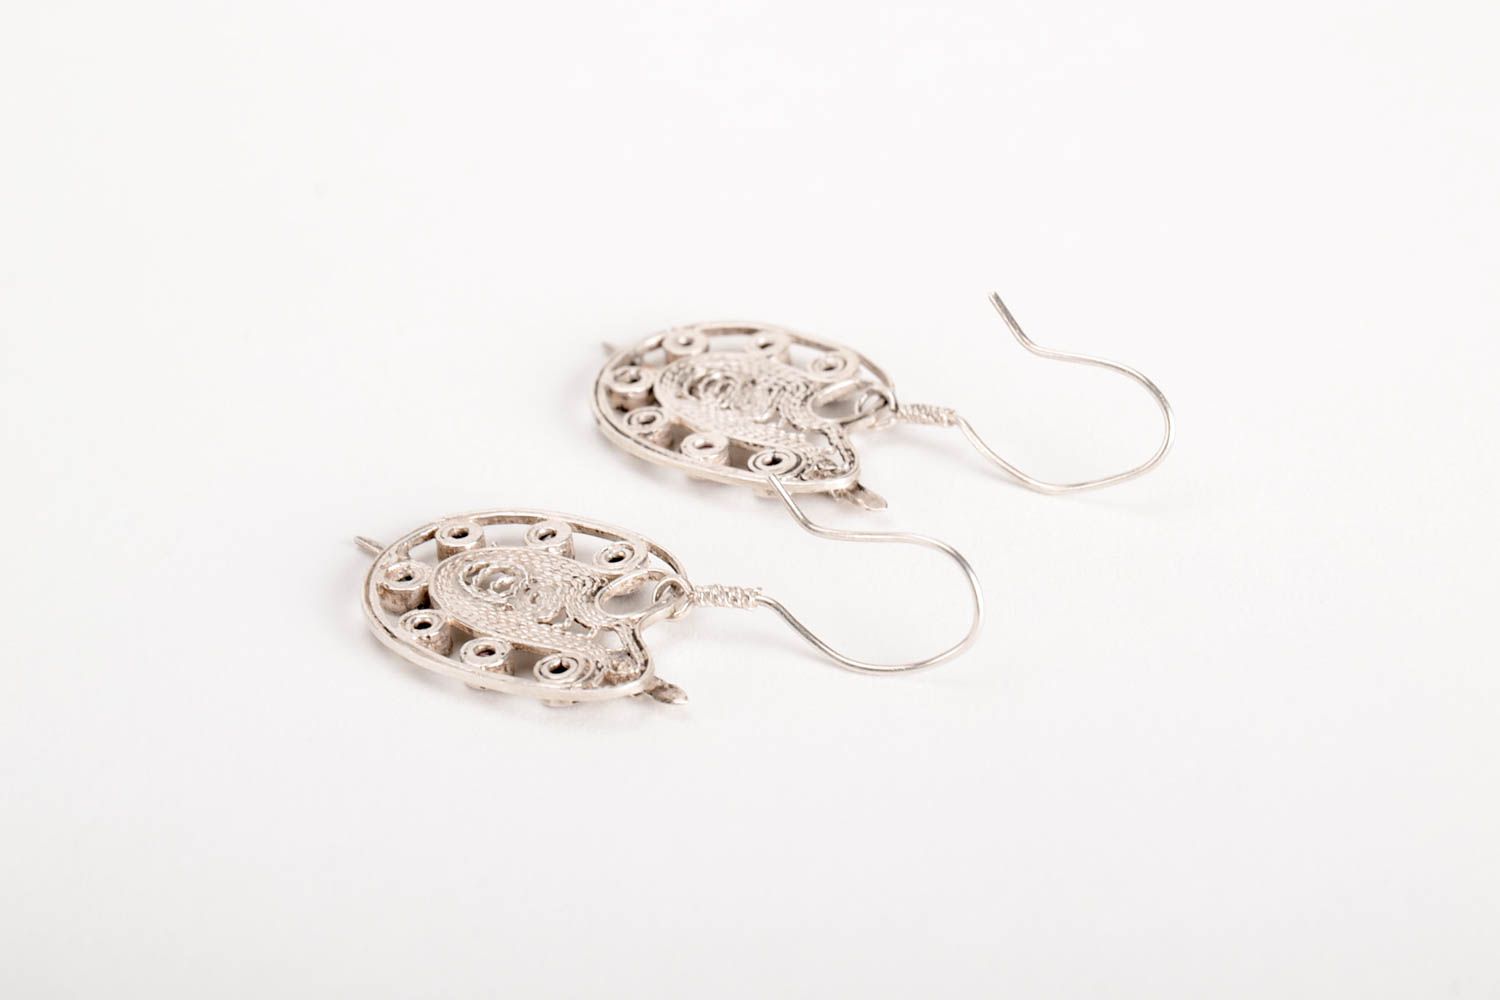 Silver earrings dangling earrings designer accessories best gifts for women photo 3